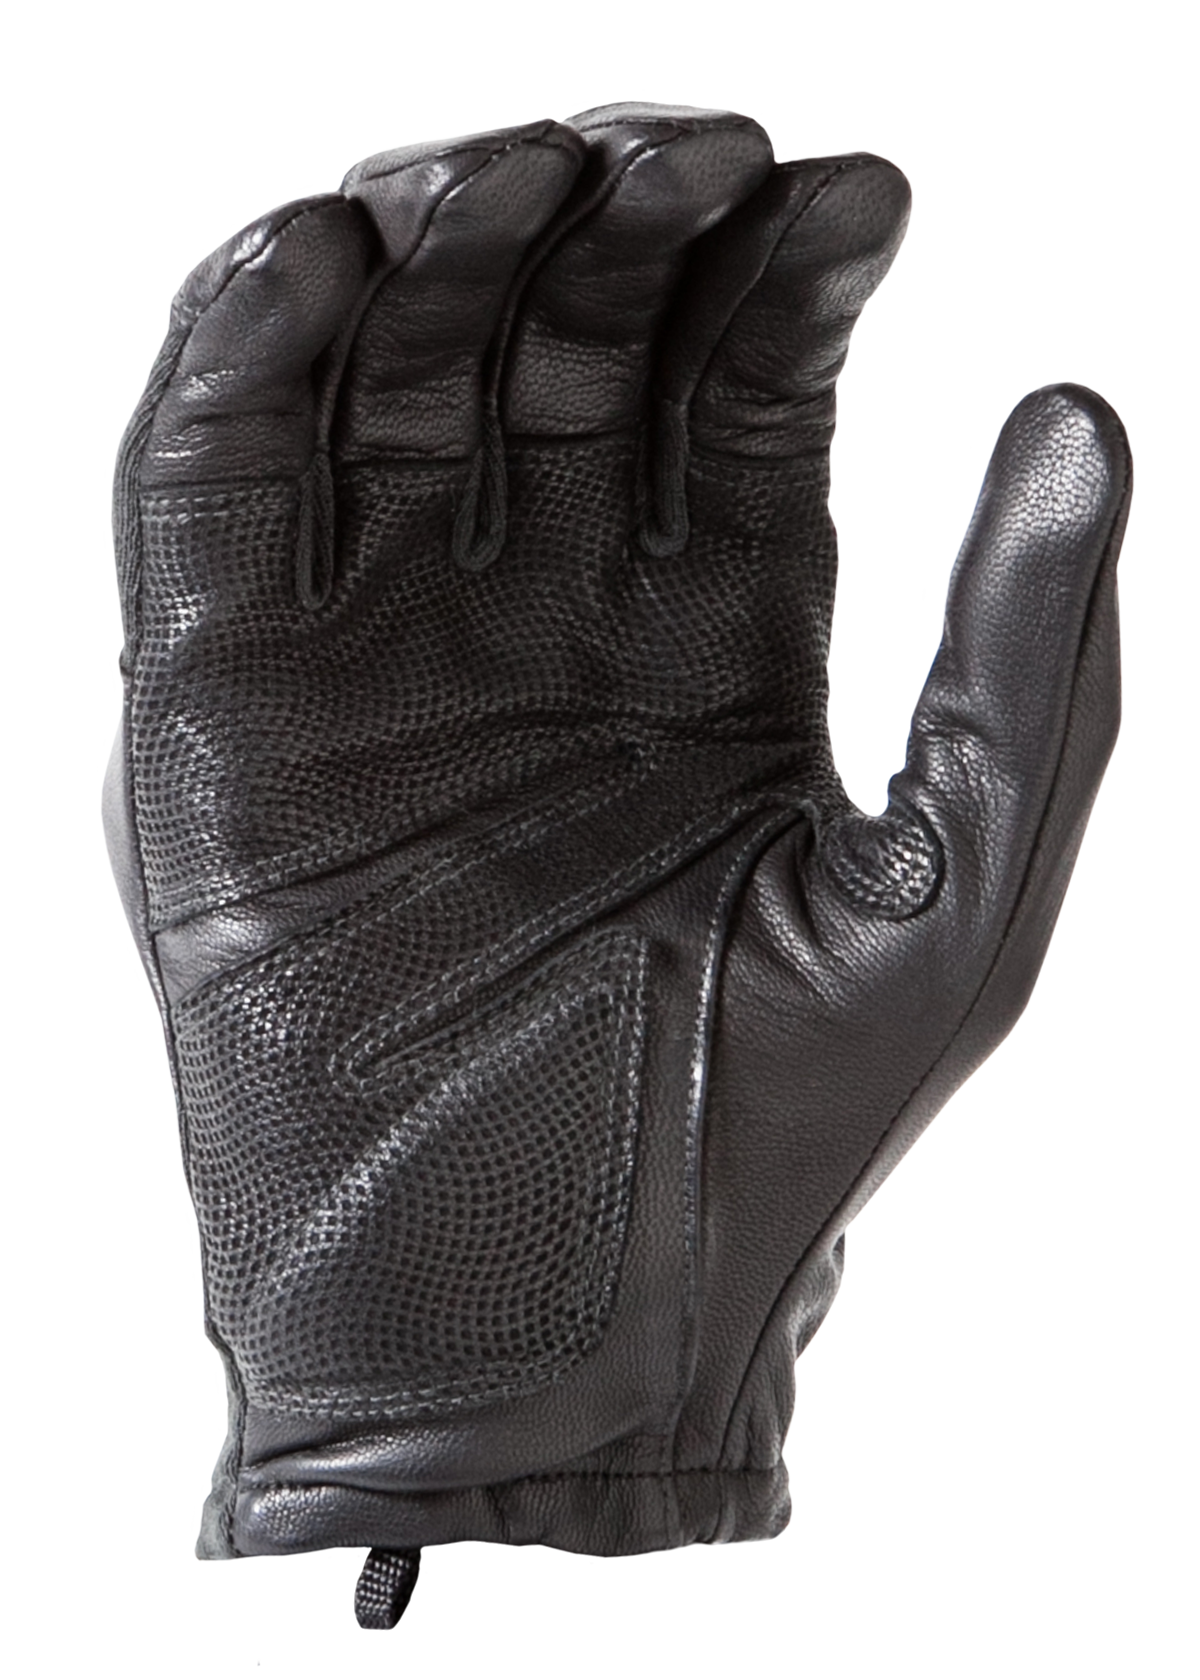 HWI Gear Hard Knuckle Tactical Gloves - Tan - HKTG300 XL